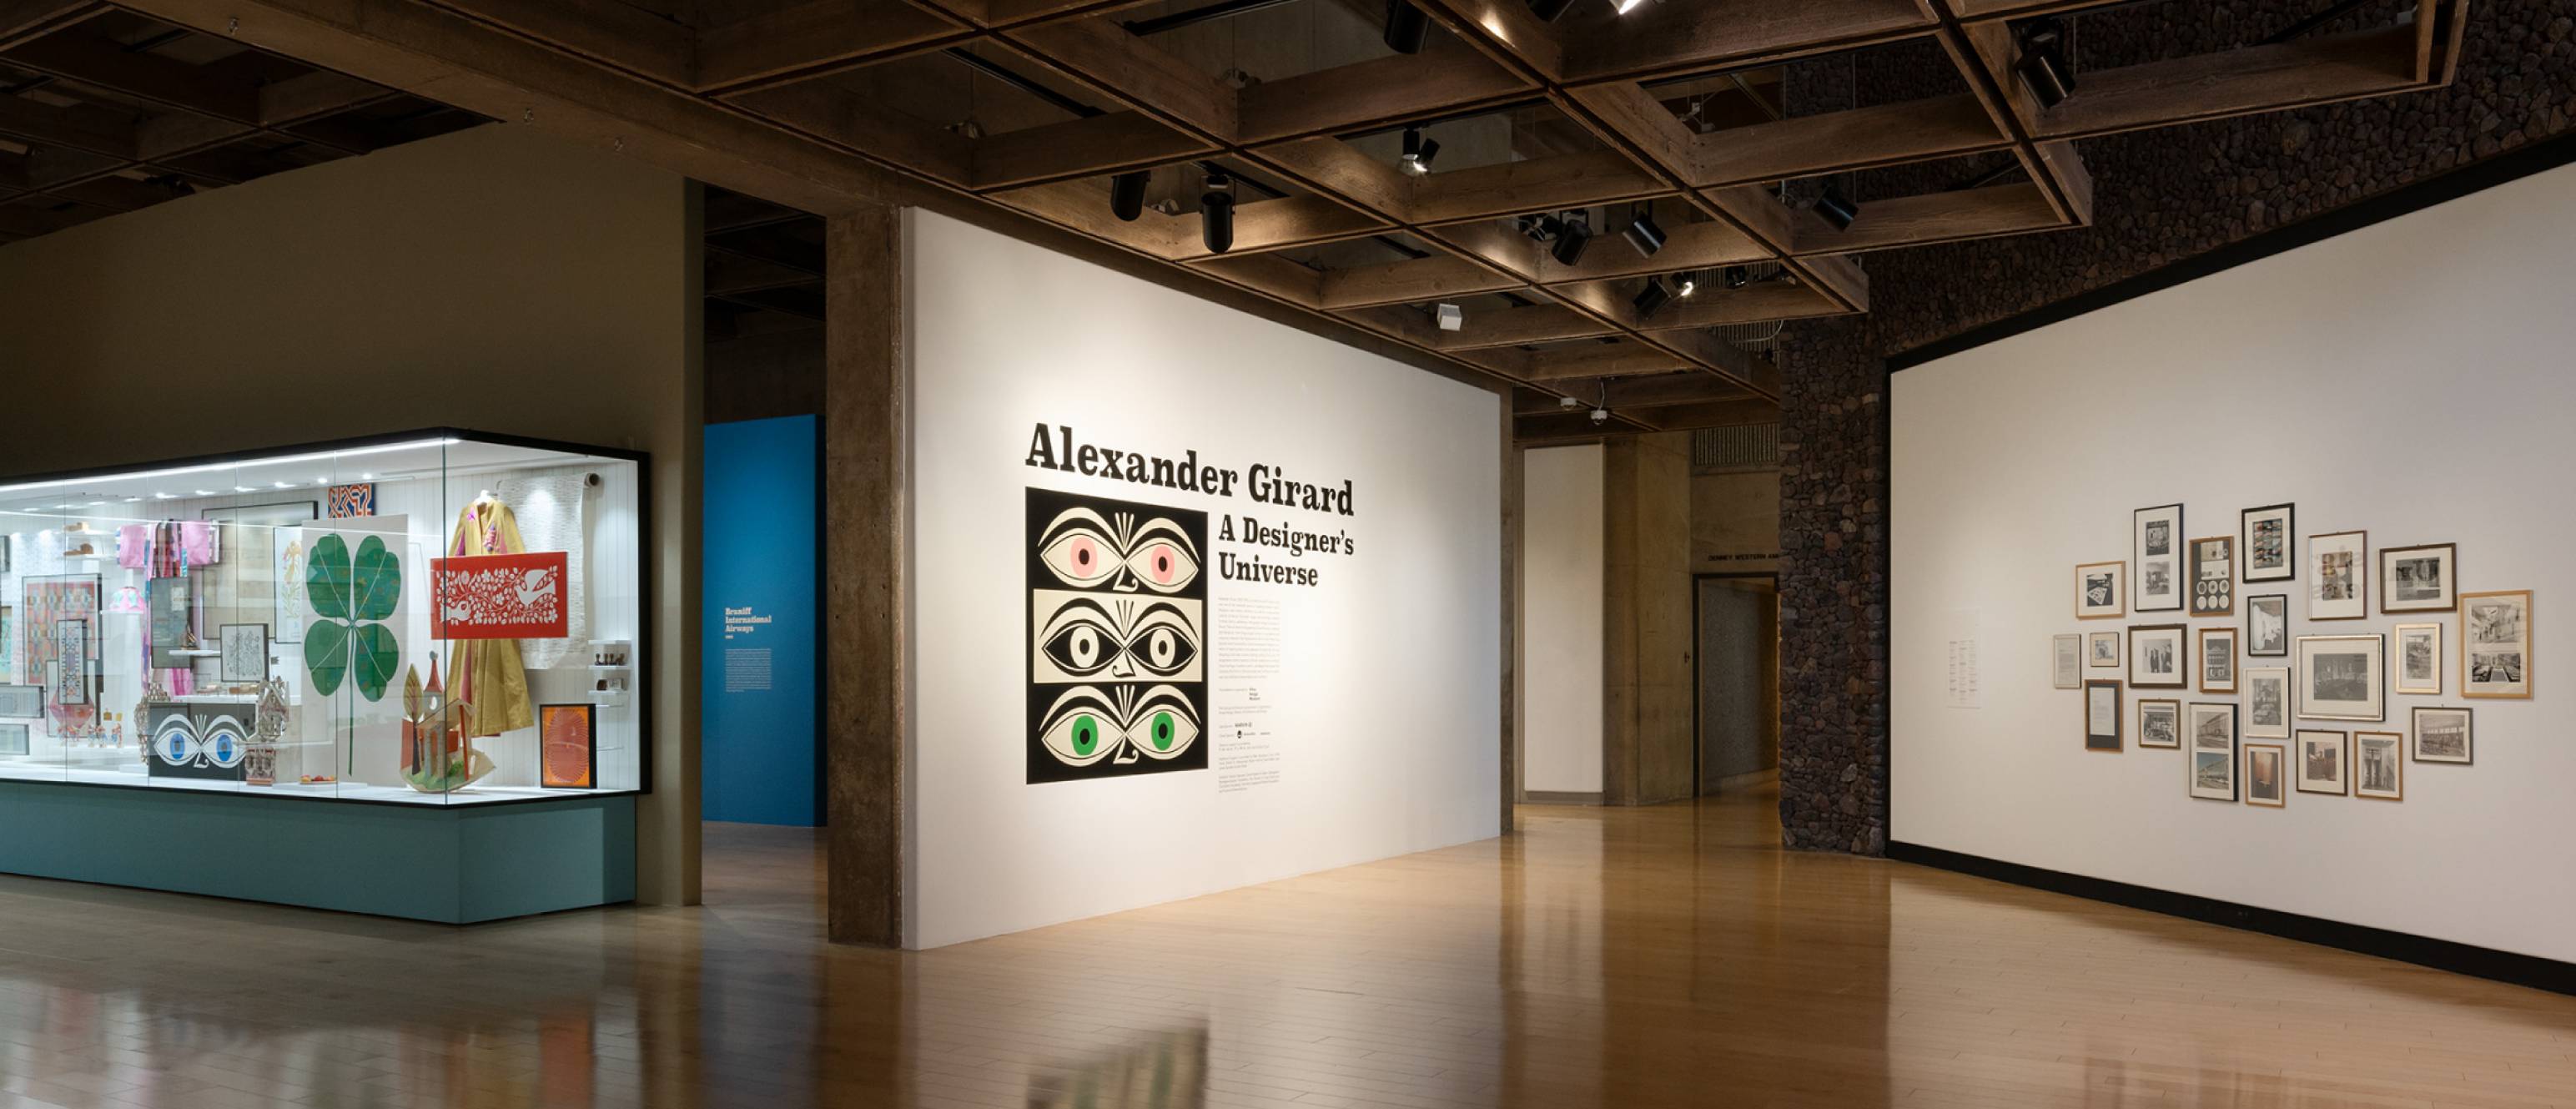 Alexander Girard exhibition entrance